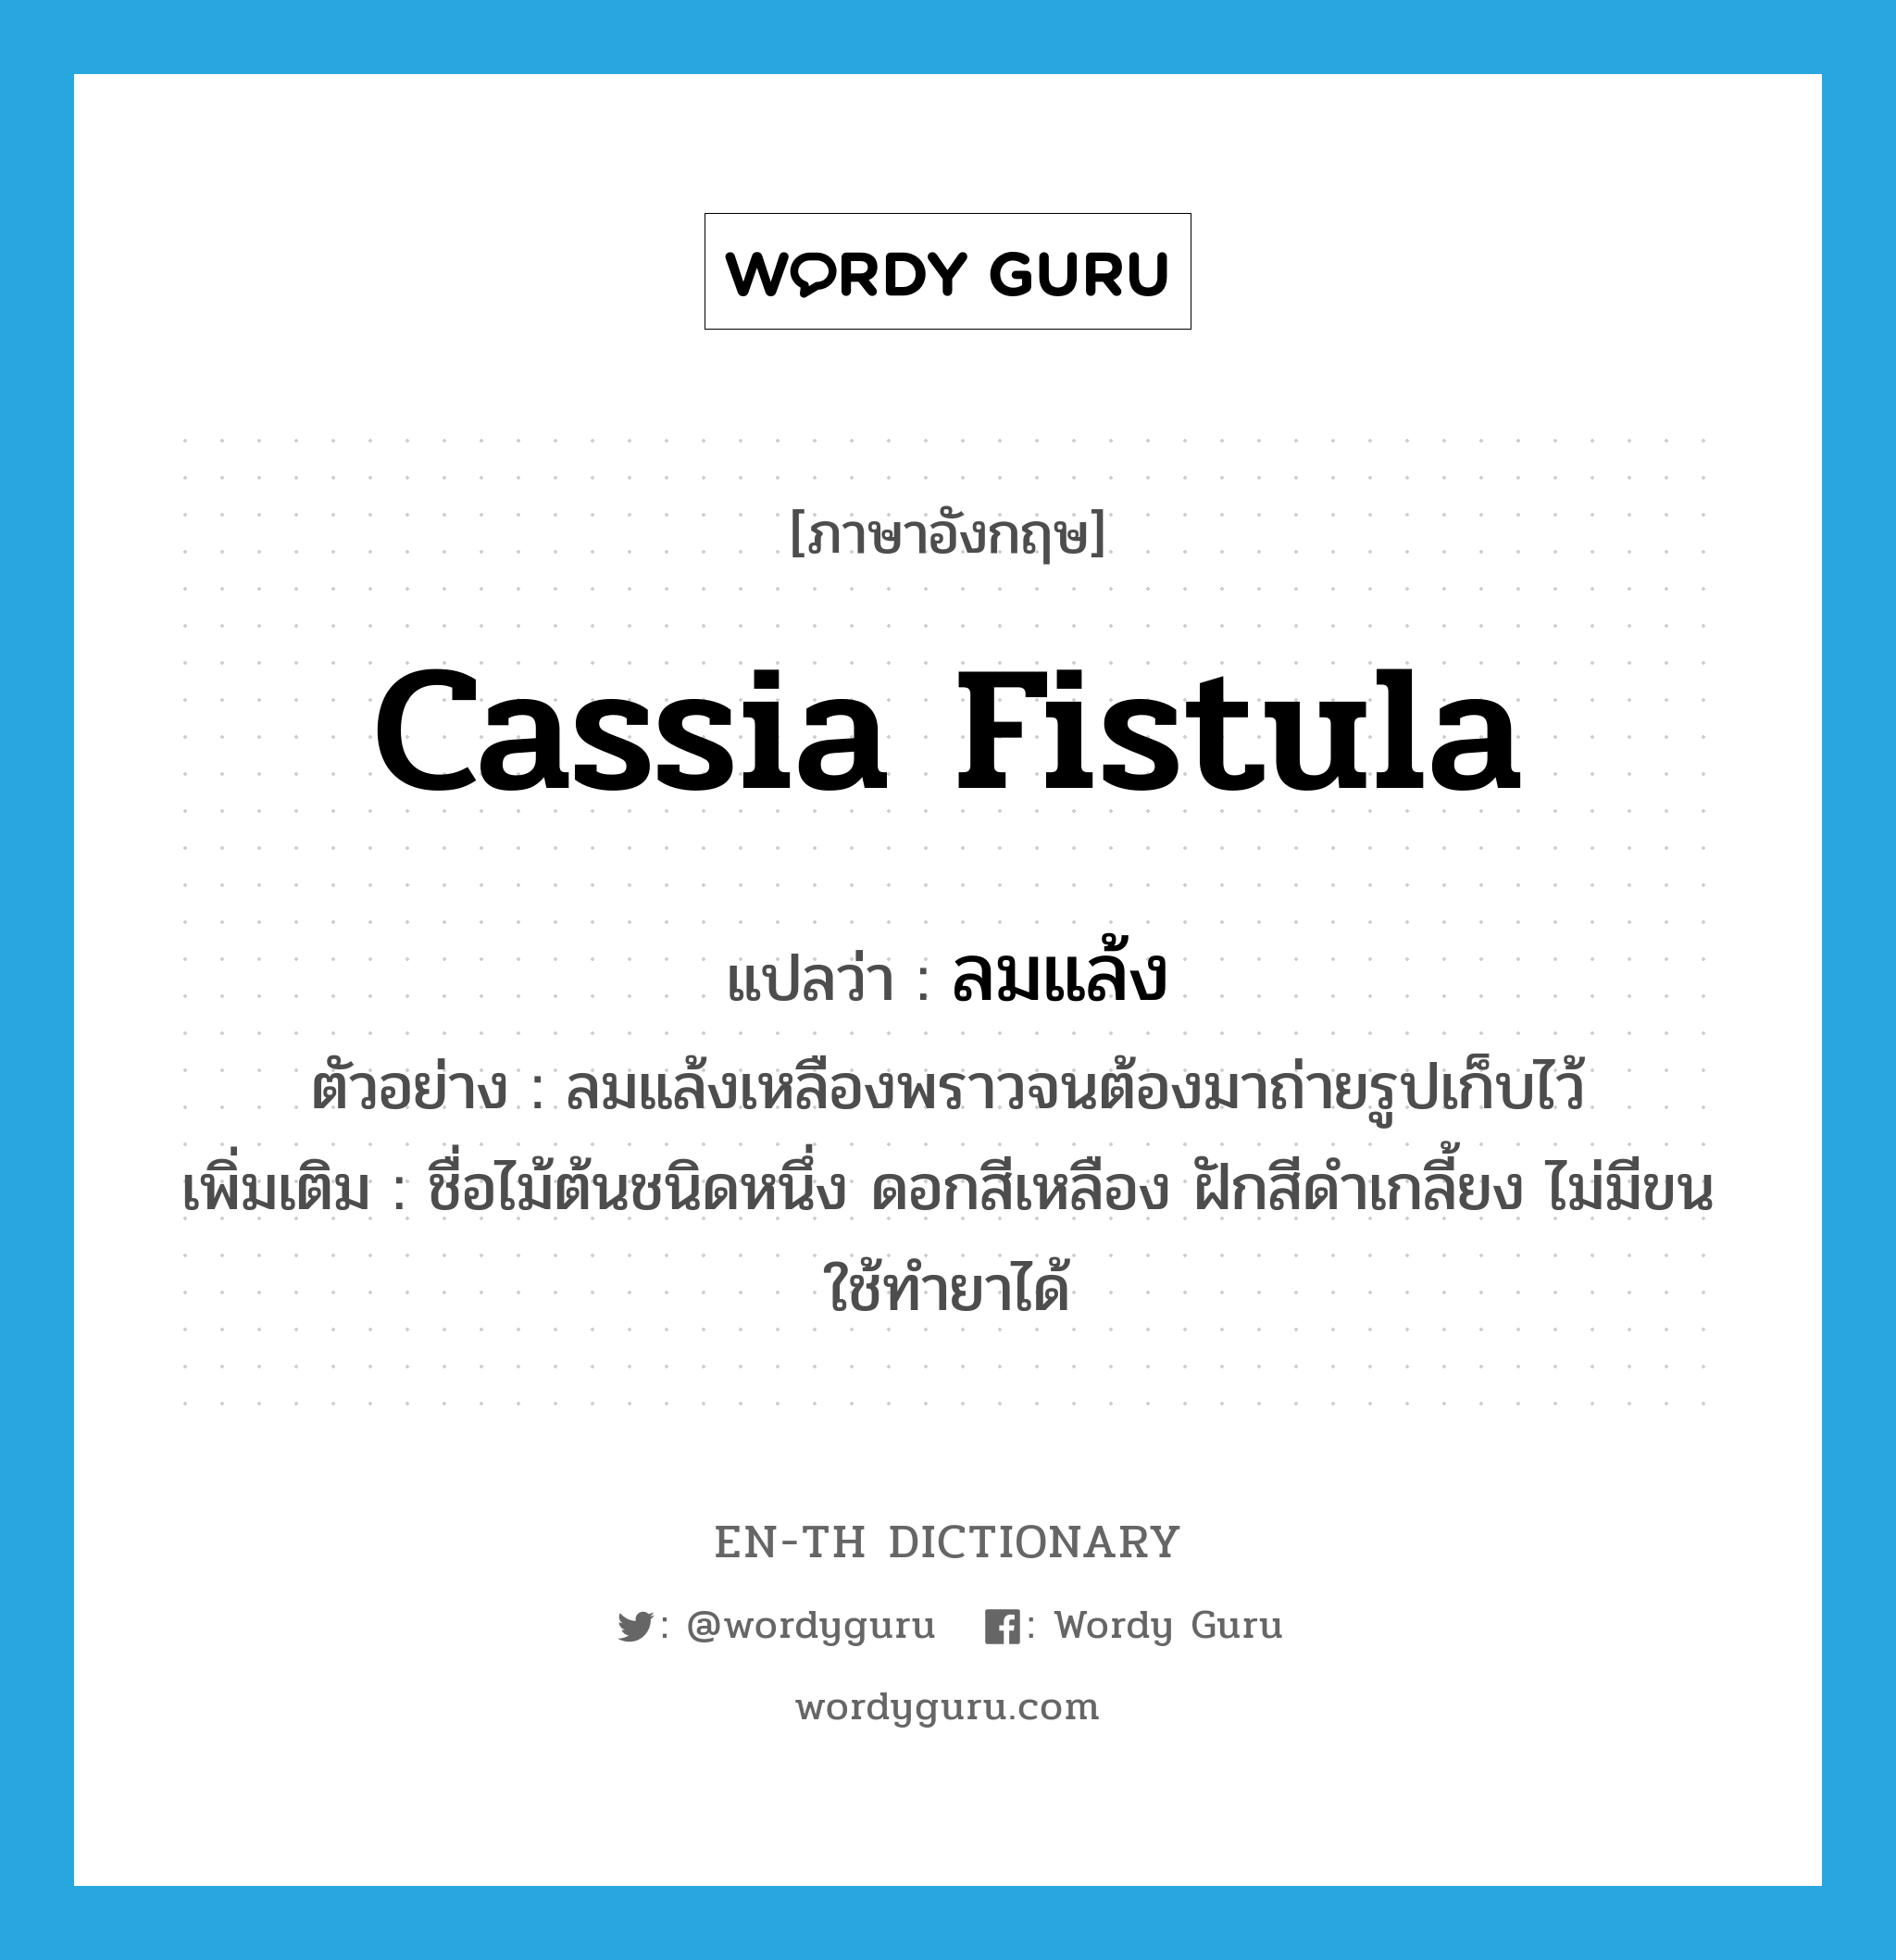 Cassia fistula แปลว่า?, คำศัพท์ภาษาอังกฤษ Cassia fistula แปลว่า ลมแล้ง ประเภท N ตัวอย่าง ลมแล้งเหลืองพราวจนต้องมาถ่ายรูปเก็บไว้ เพิ่มเติม ชื่อไม้ต้นชนิดหนึ่ง ดอกสีเหลือง ฝักสีดำเกลี้ยง ไม่มีขน ใช้ทำยาได้ หมวด N